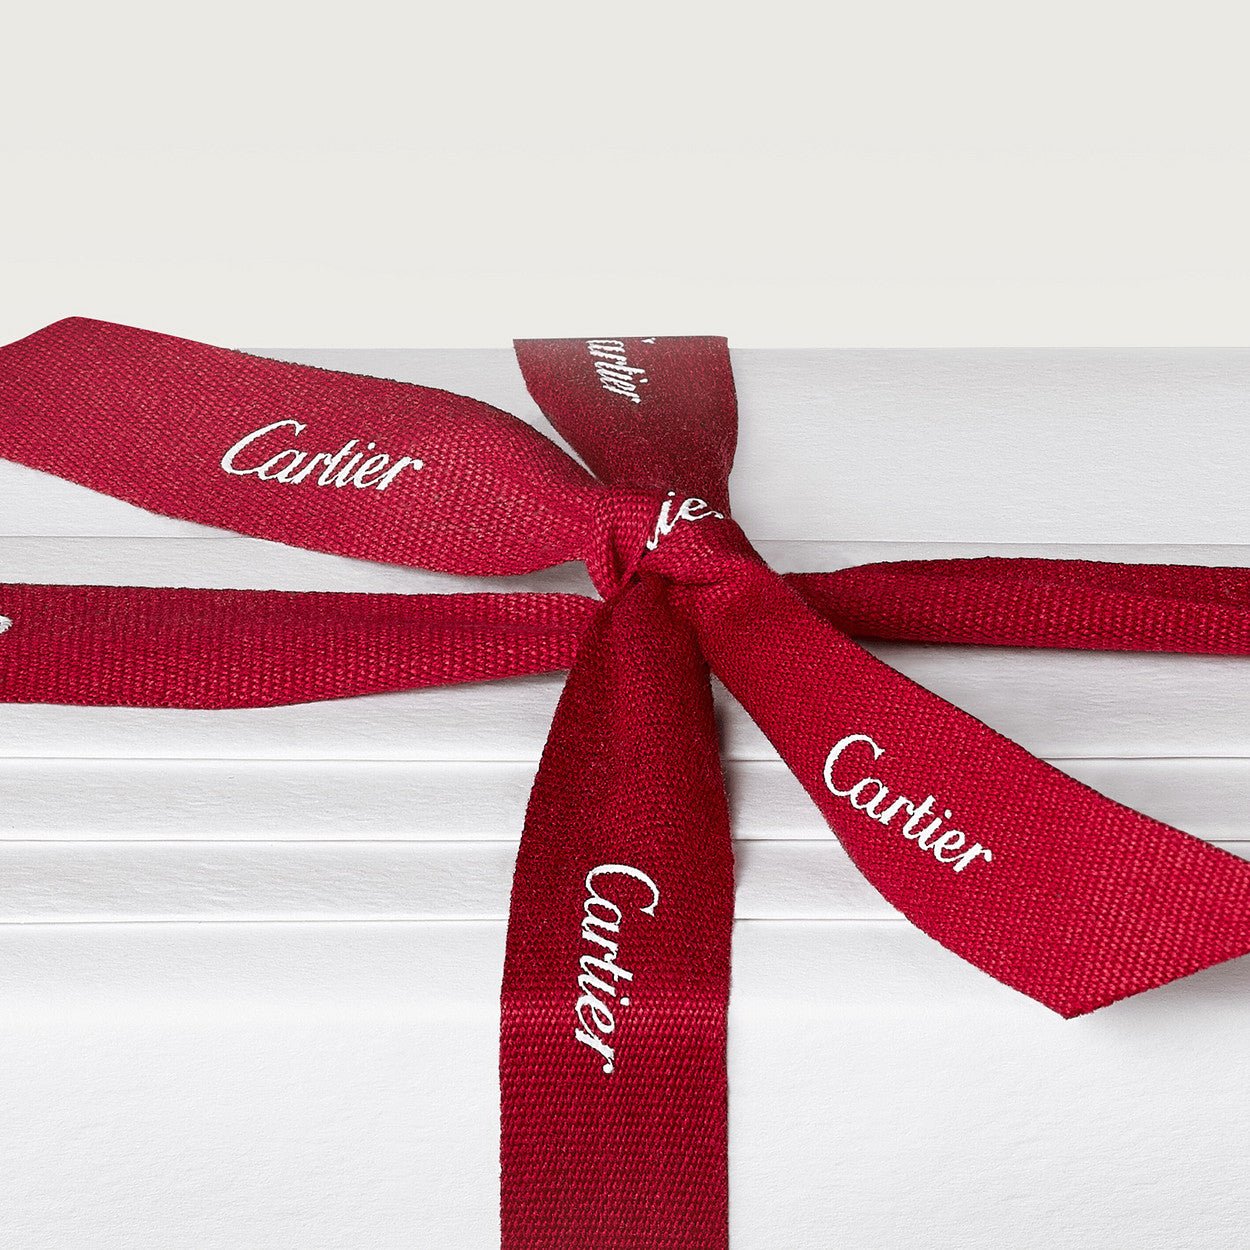 Cartier La Panthere Parfum | My Perfume Shop Australia